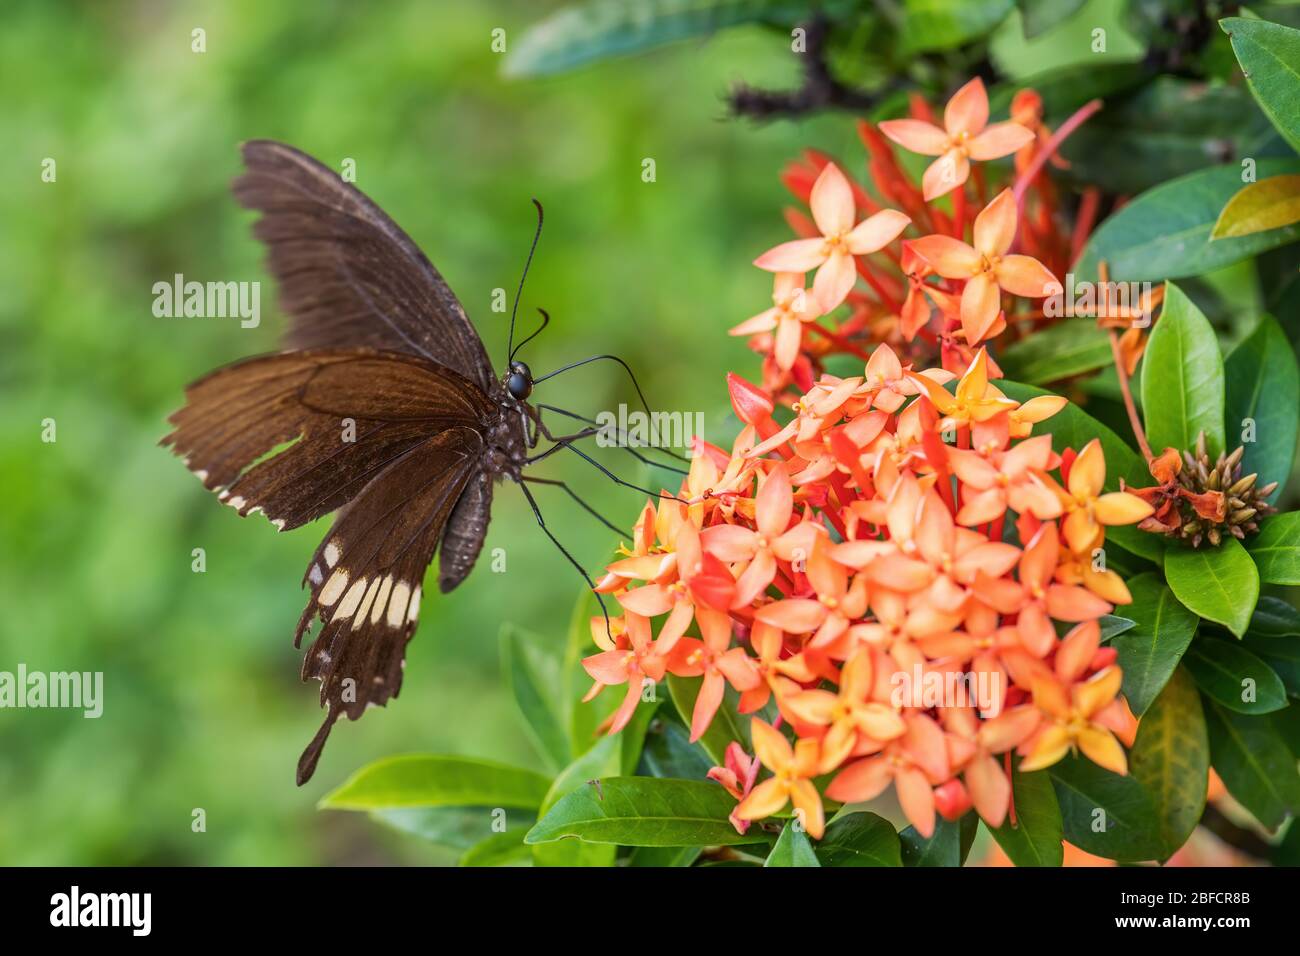 Mormon comune - Papilio politi, bella grande farfalla nera da prati e boschi del sud-est asiatico, Malesia. Foto Stock